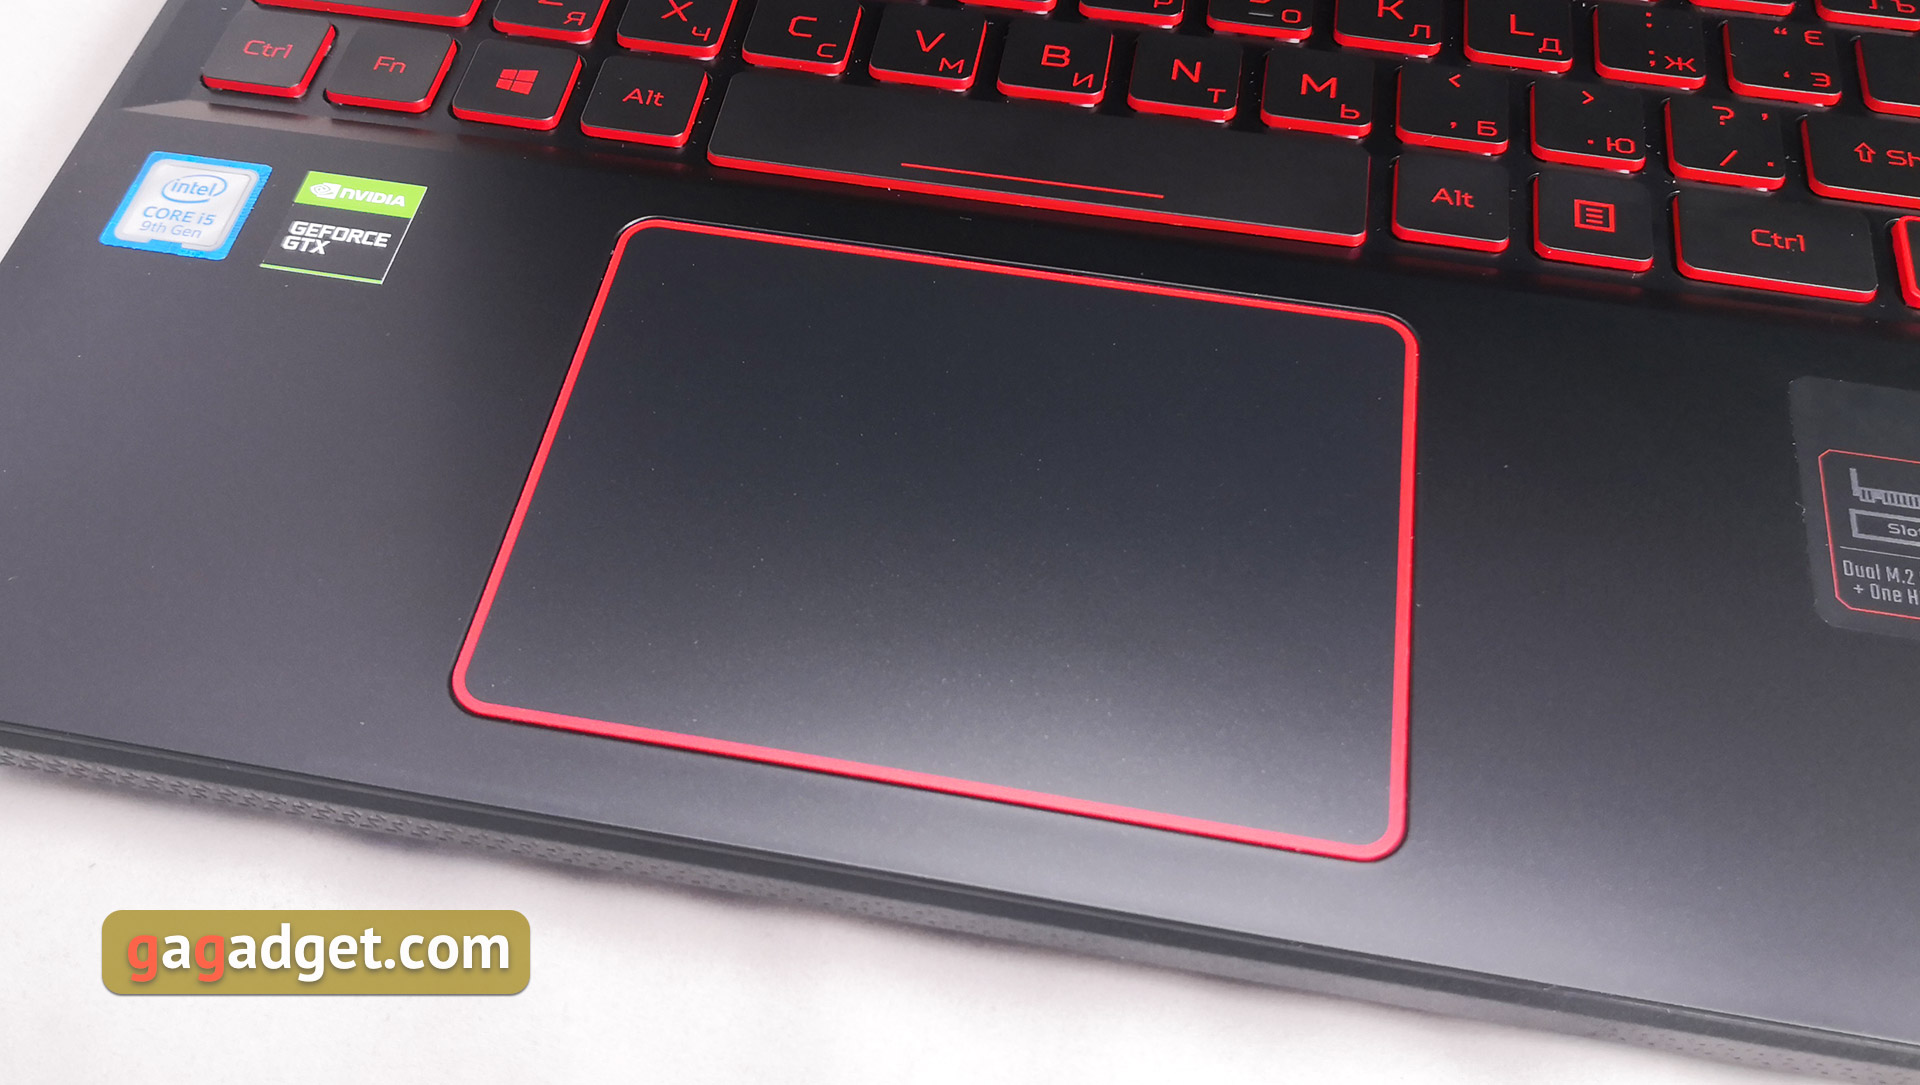 Recenzja laptopa do gier Acer Nitro 5 AN515-54: niedrogi i wydajny-18